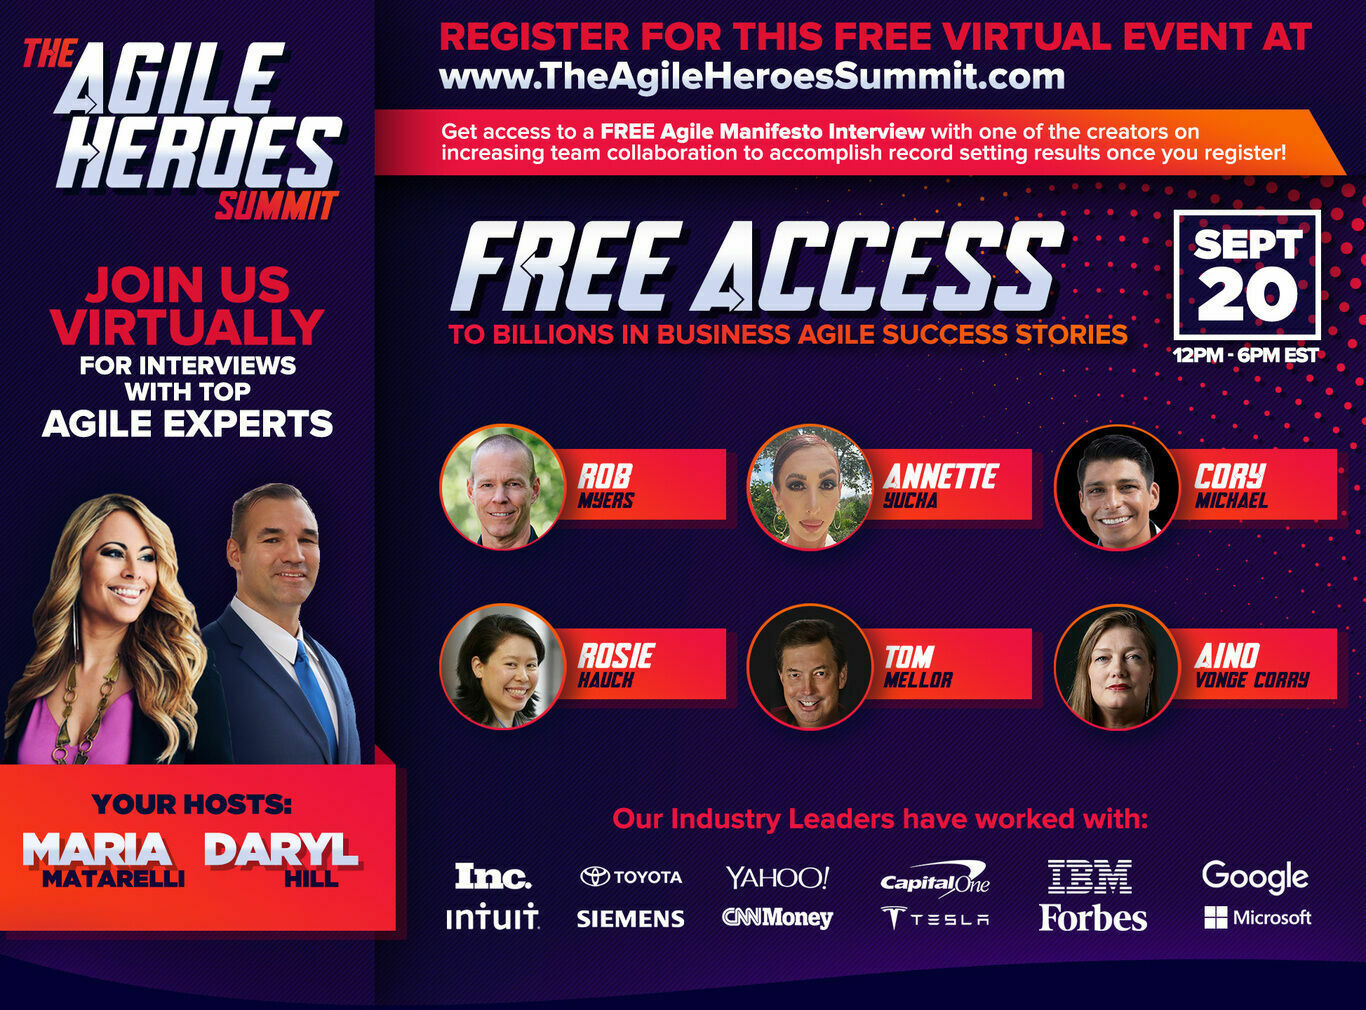 The Agile Heroes Summit